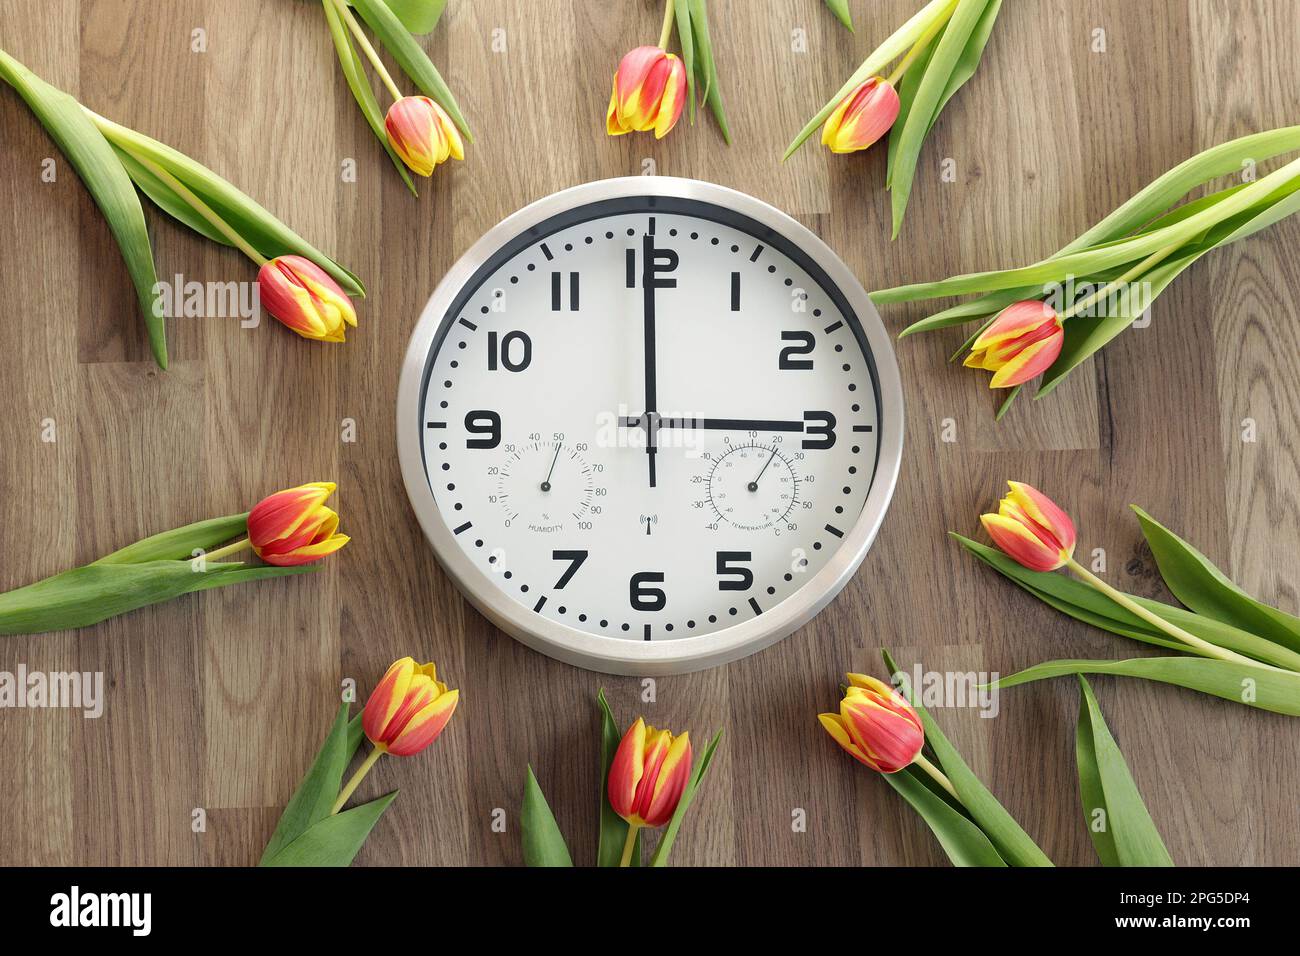 Eine Uhr zeigt drei Stunden an. Tulpen liegen herum. Ein Symbol für die Zeitänderung. Sommerzeit. Bewegen Sie die Hände nach vorne. Stockfoto